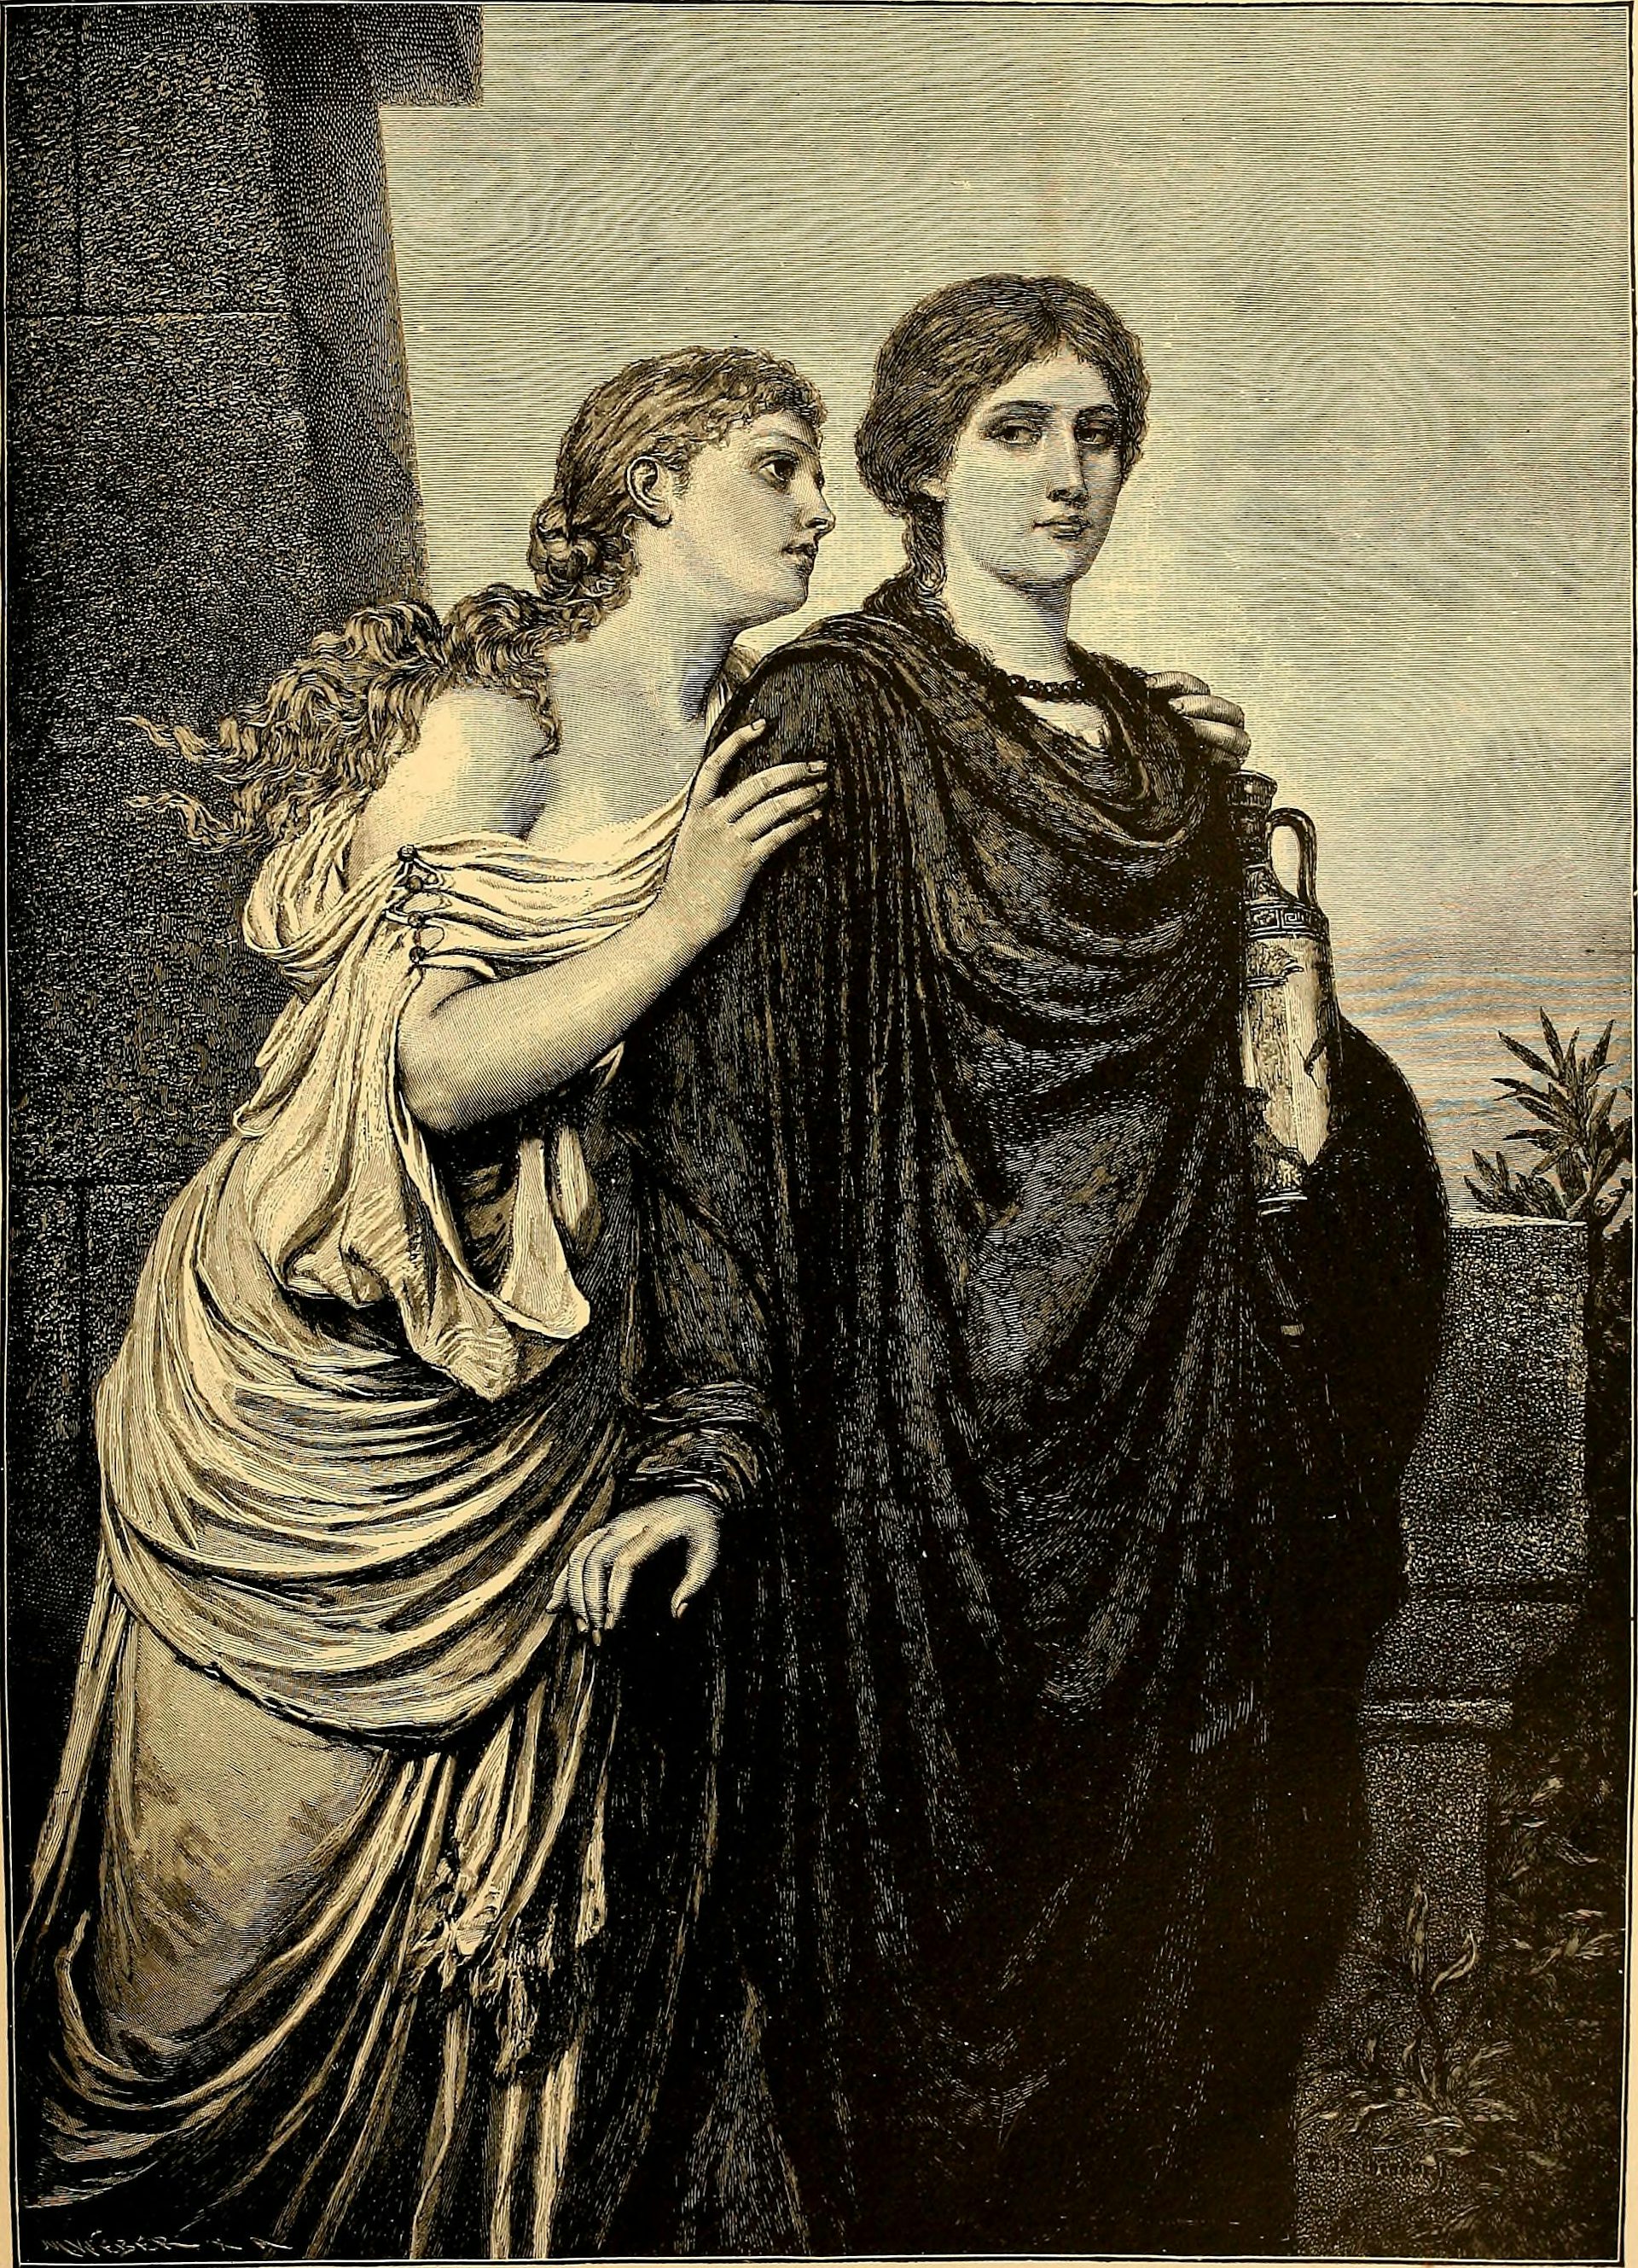 Illustration of Antigone and Ismene